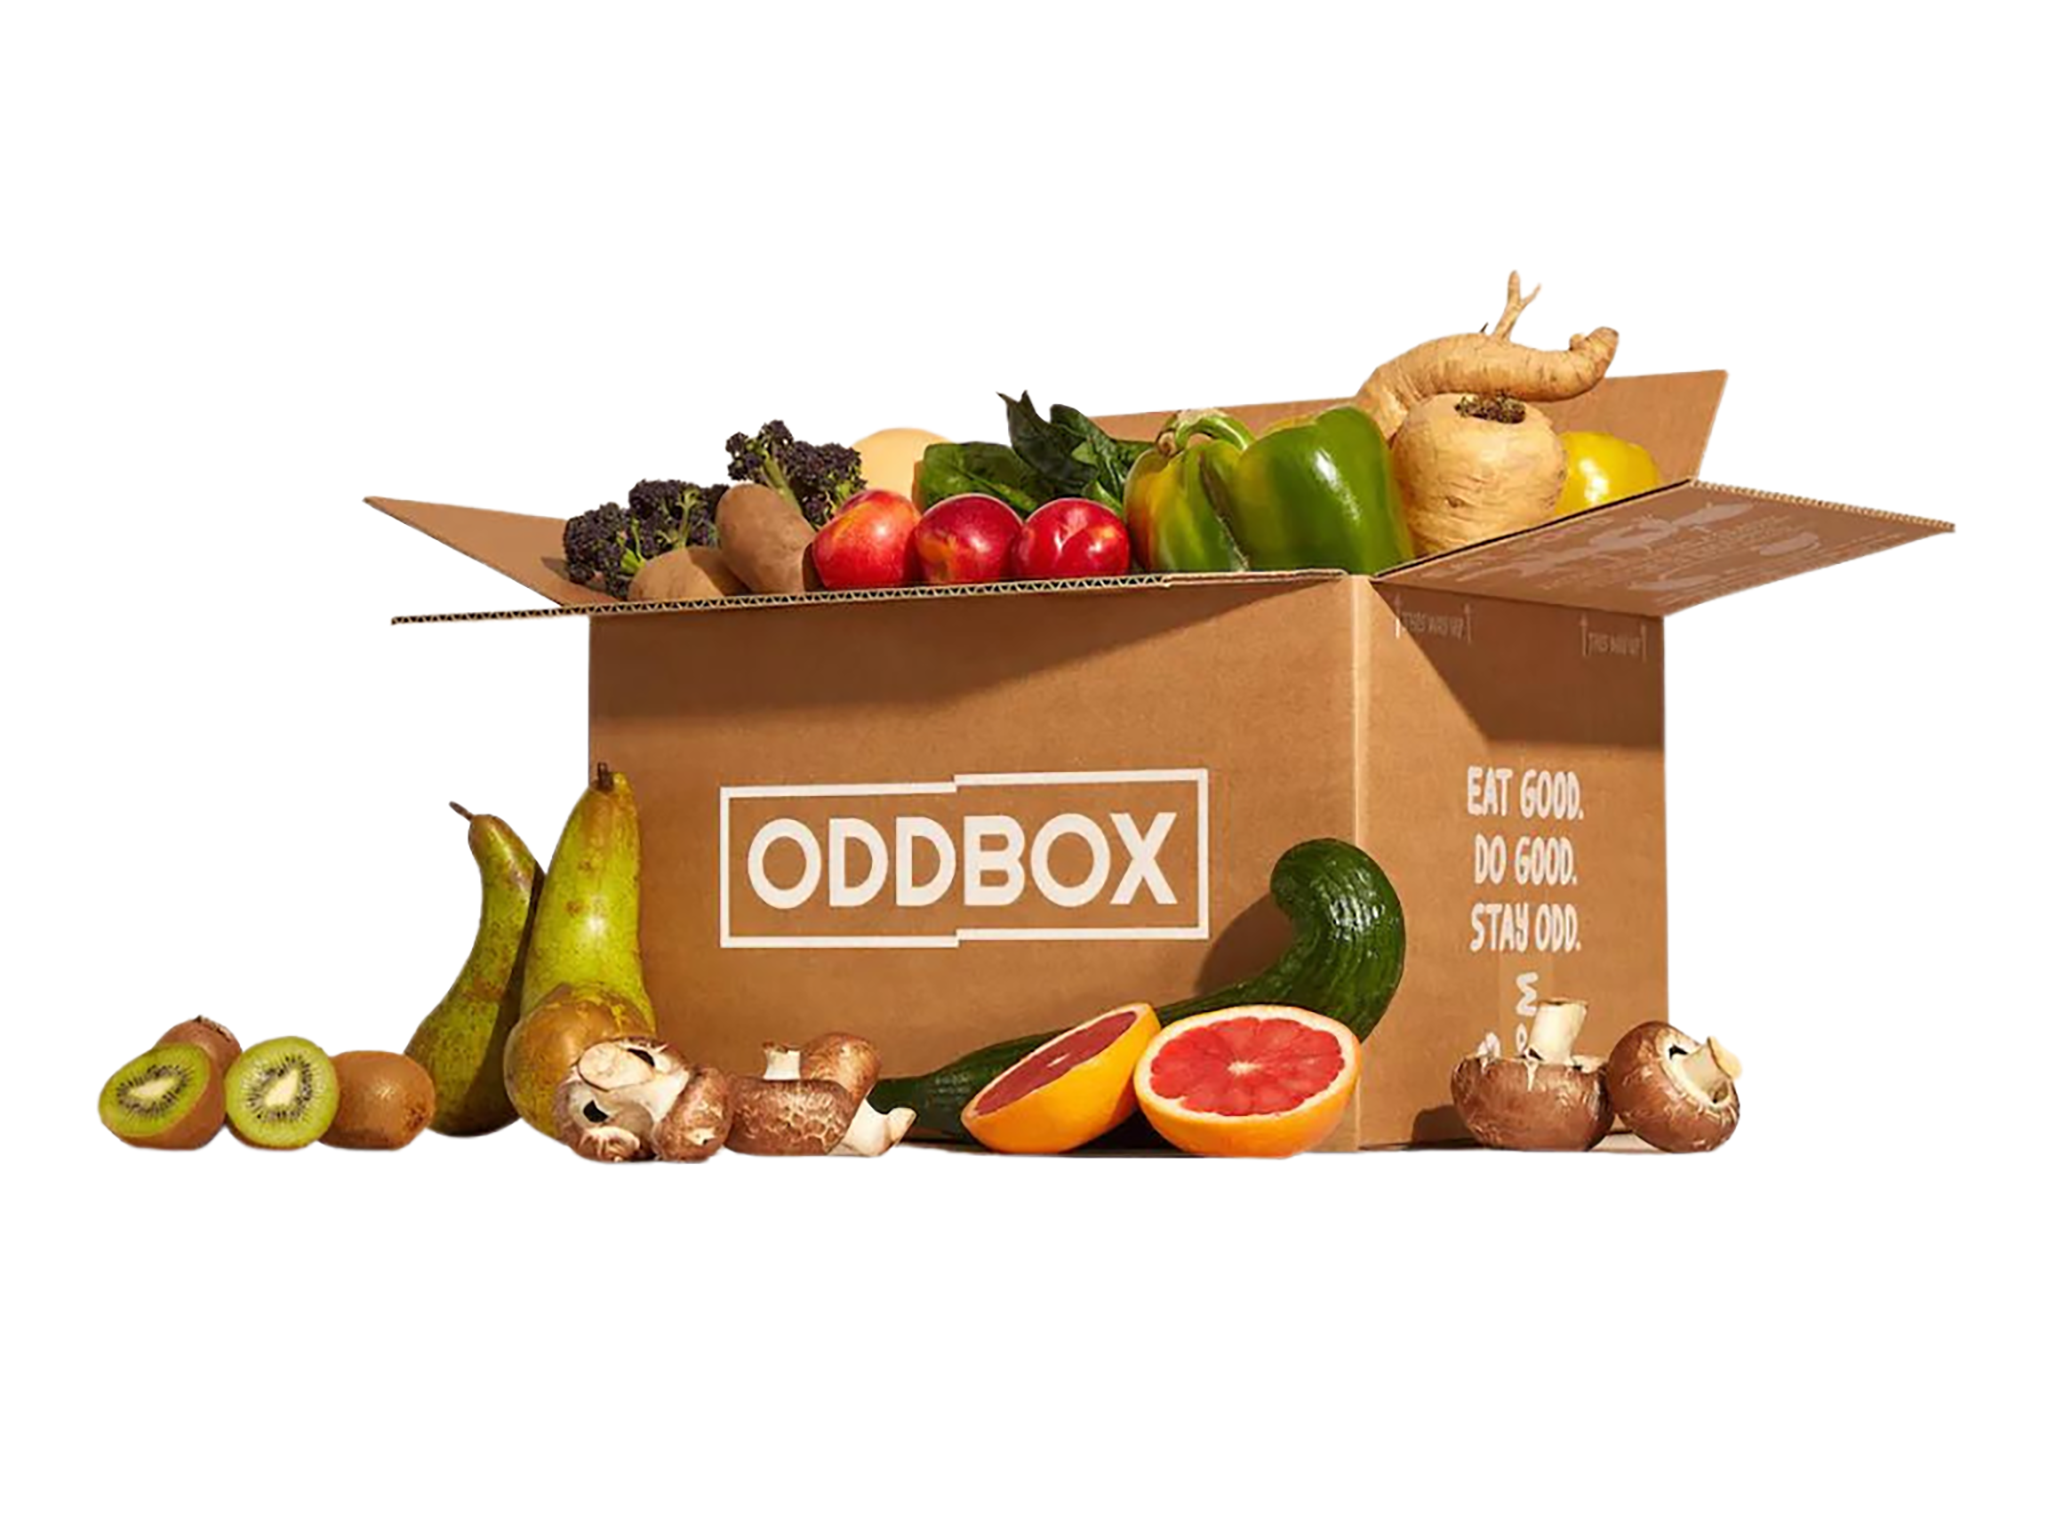 Oddbox food box.png